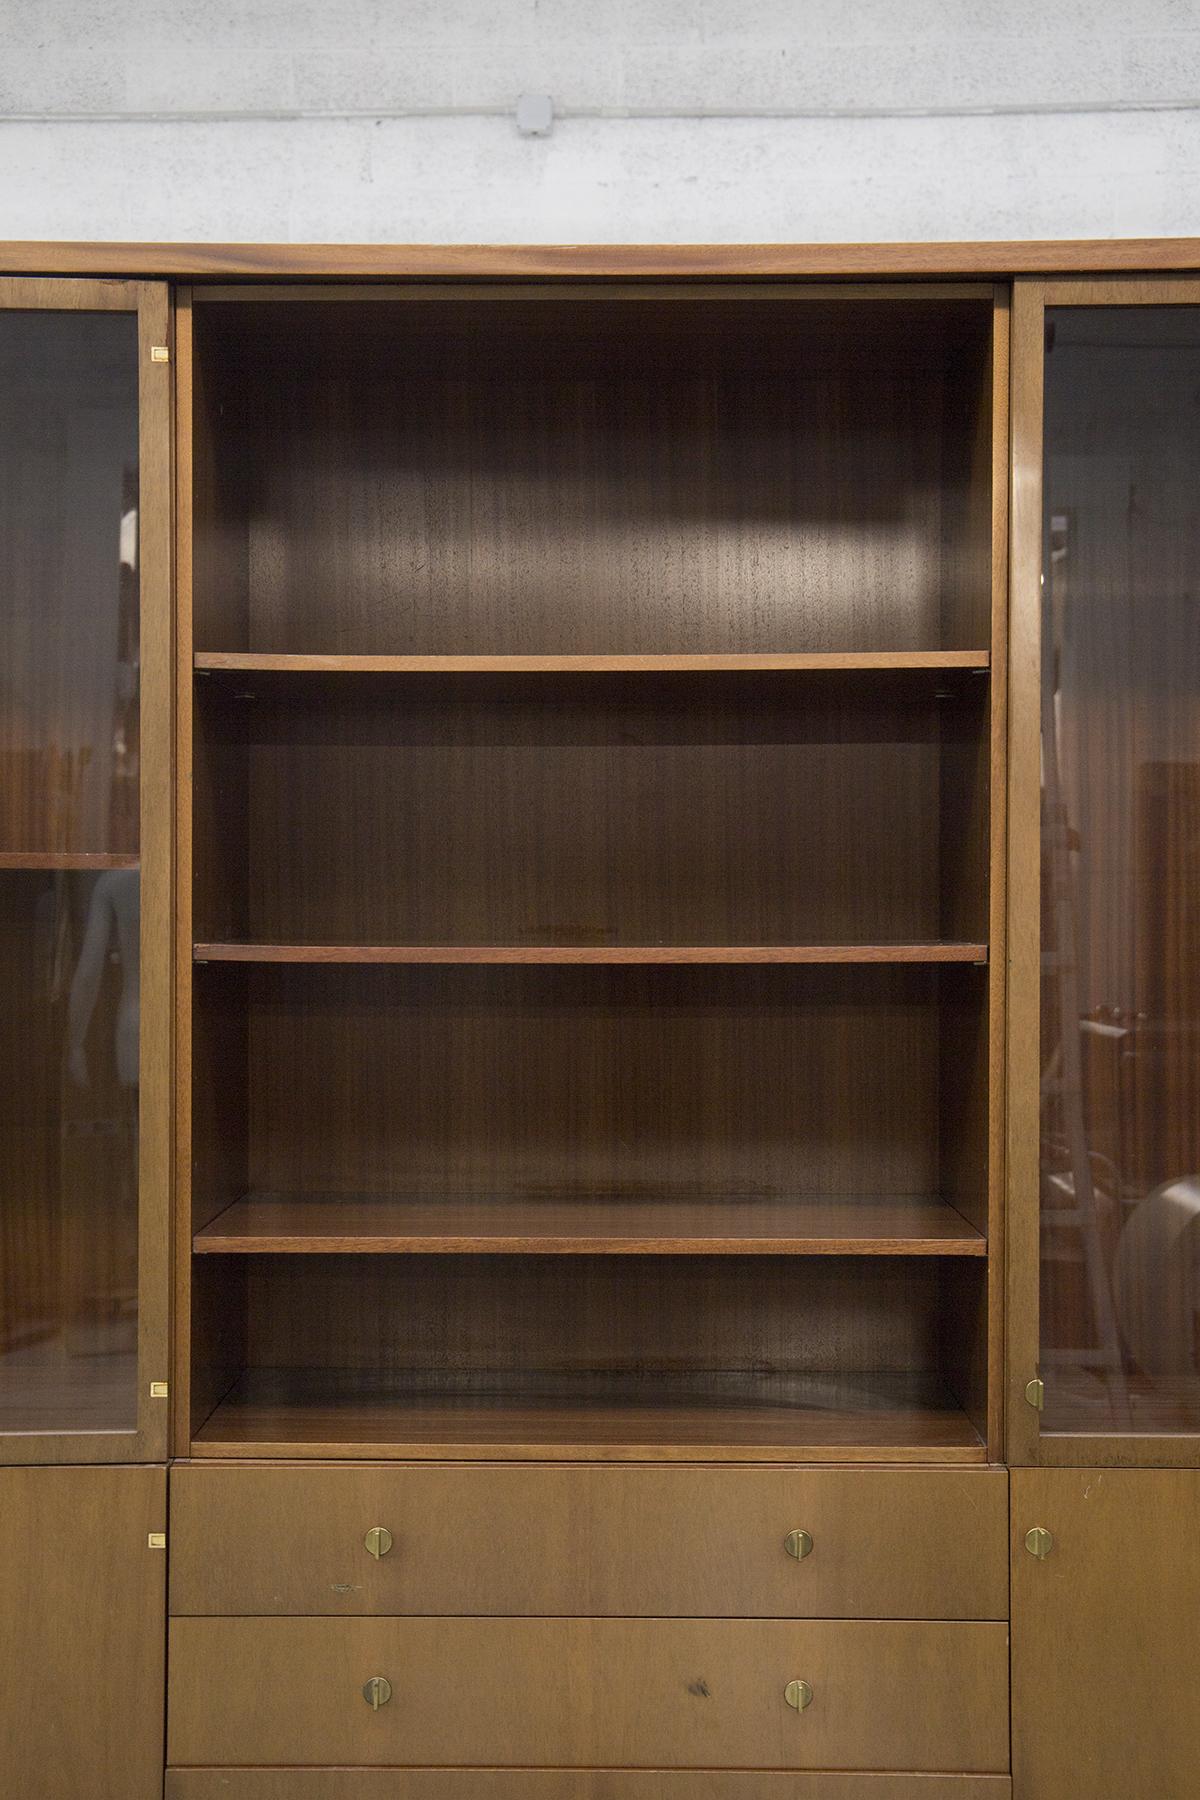 Magnifique bibliothèque vintage en bois conçue par Pierre Balmain dans les années 80, belle fabrication française. 
La bibliothèque vintage est entièrement faite de bois et a une forme rectangulaire. Elle est composée de deux vitrines sur les deux